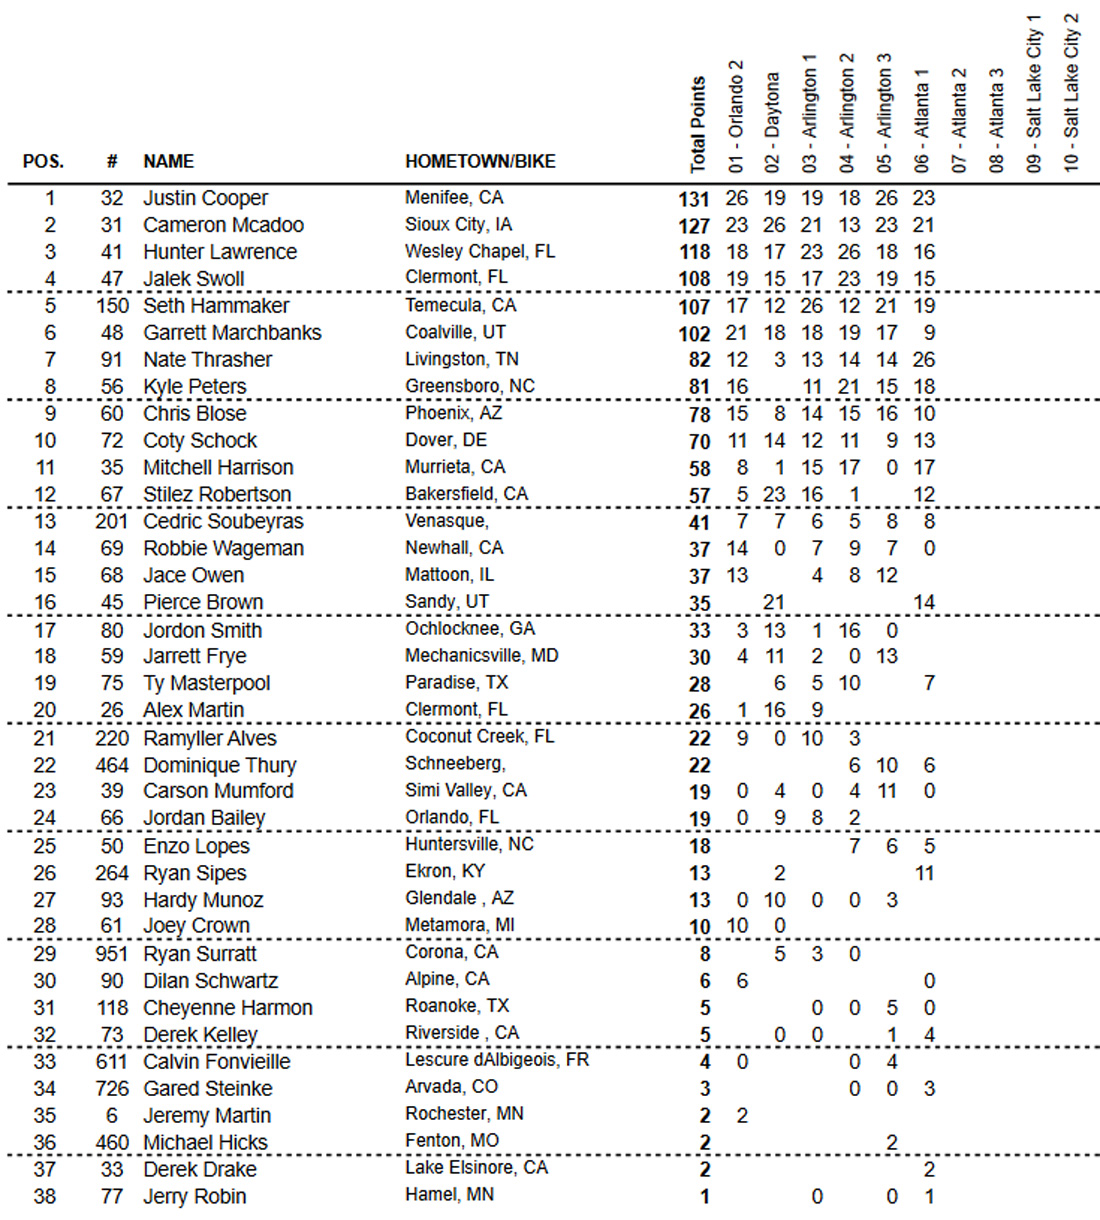 Classificação geral do AMA Supercross 2021 após 13 etapas - categoria 250